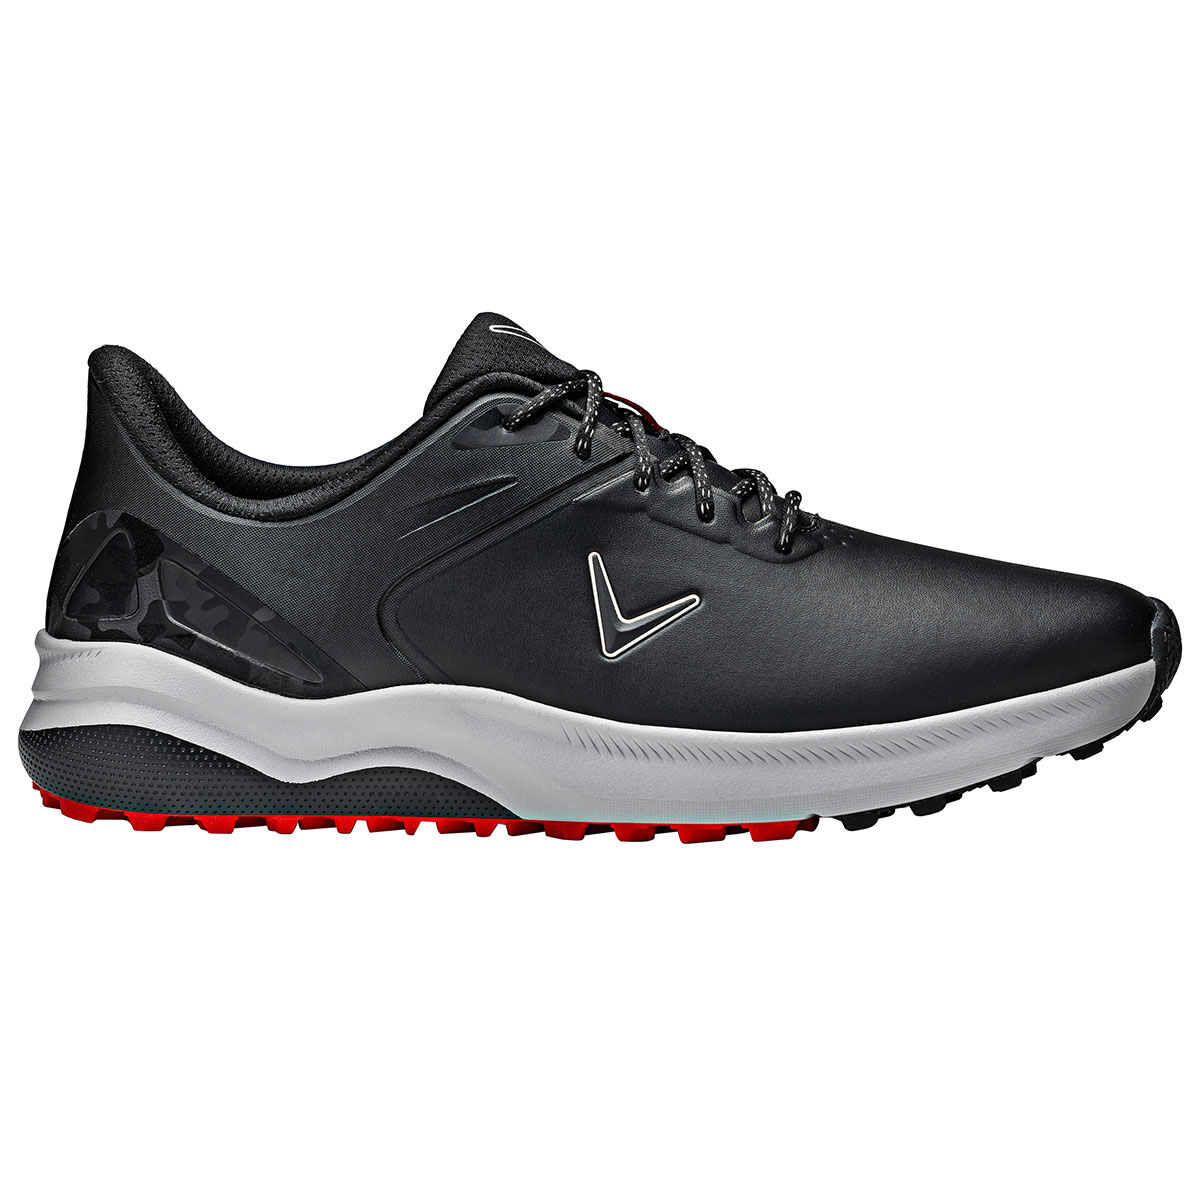 Callaway Golf Mens Black Waterproof Lazer Spikeless Golf Shoes, Size: 9 | American Golf von Callaway Golf